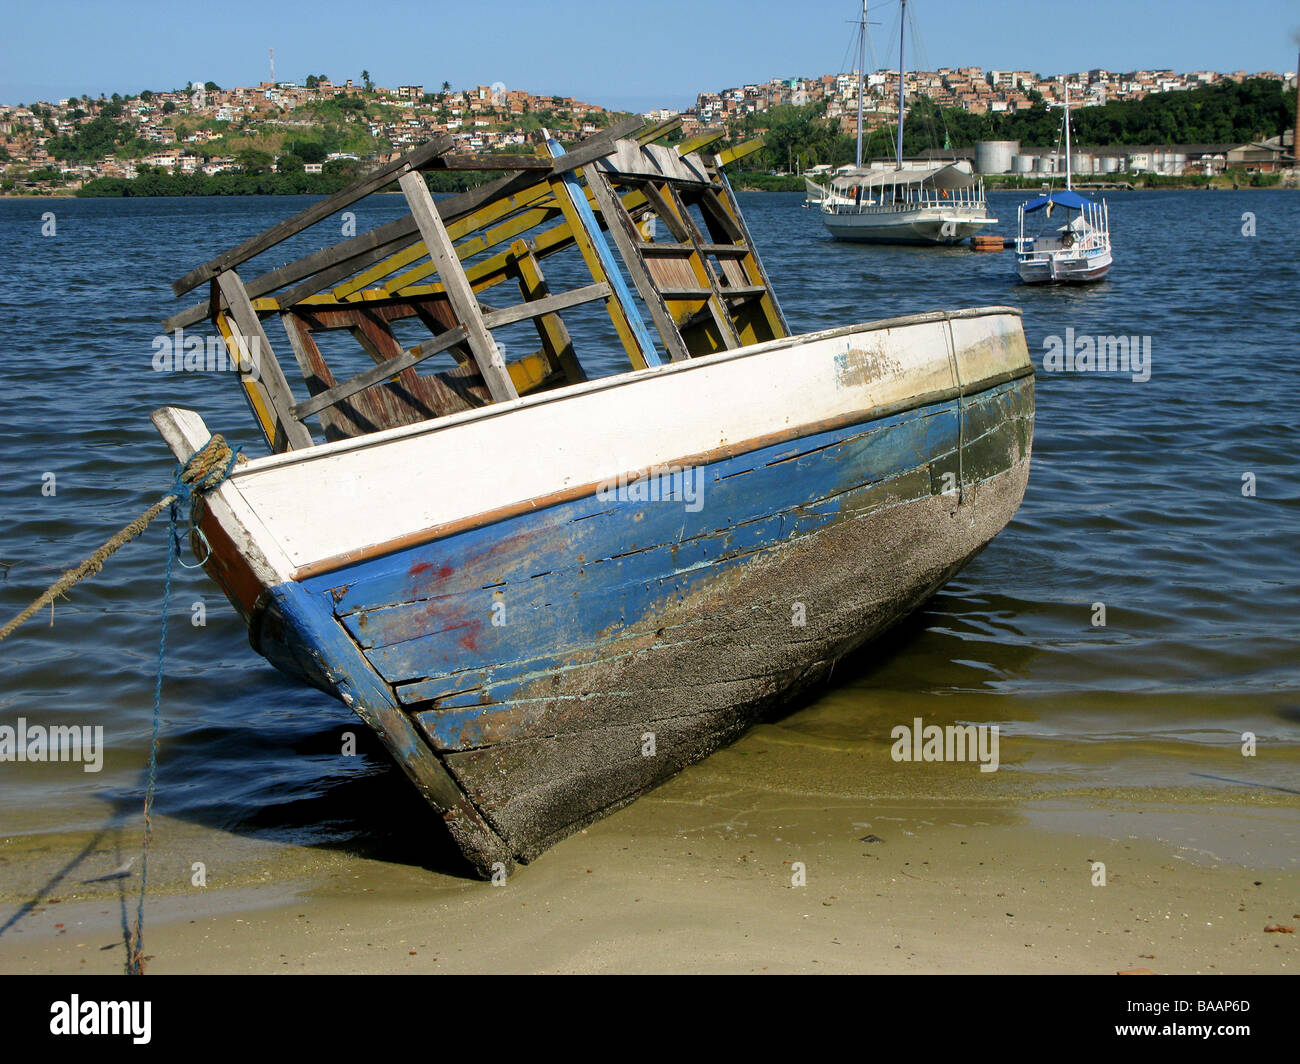 Boats at Porto da Barra beach, Salvador, Brazil Stock Photo